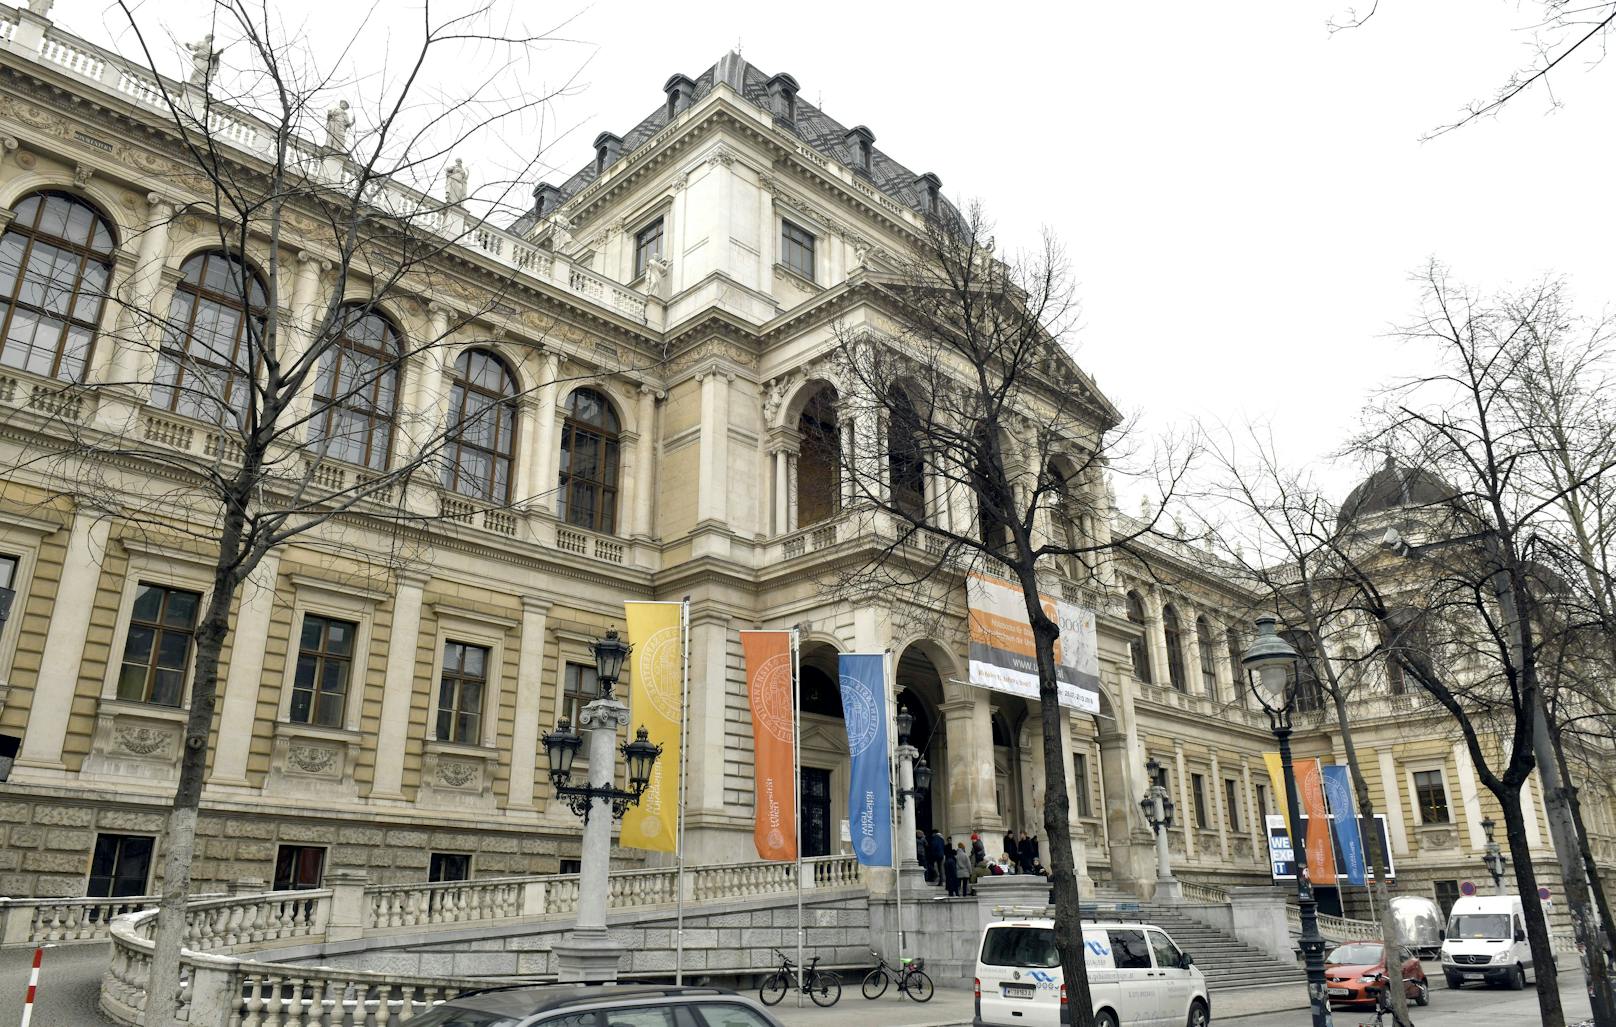 Viele Bundesländer haben eigene Universitäten, Niederösterreich auch, aber nur private Institutionen.